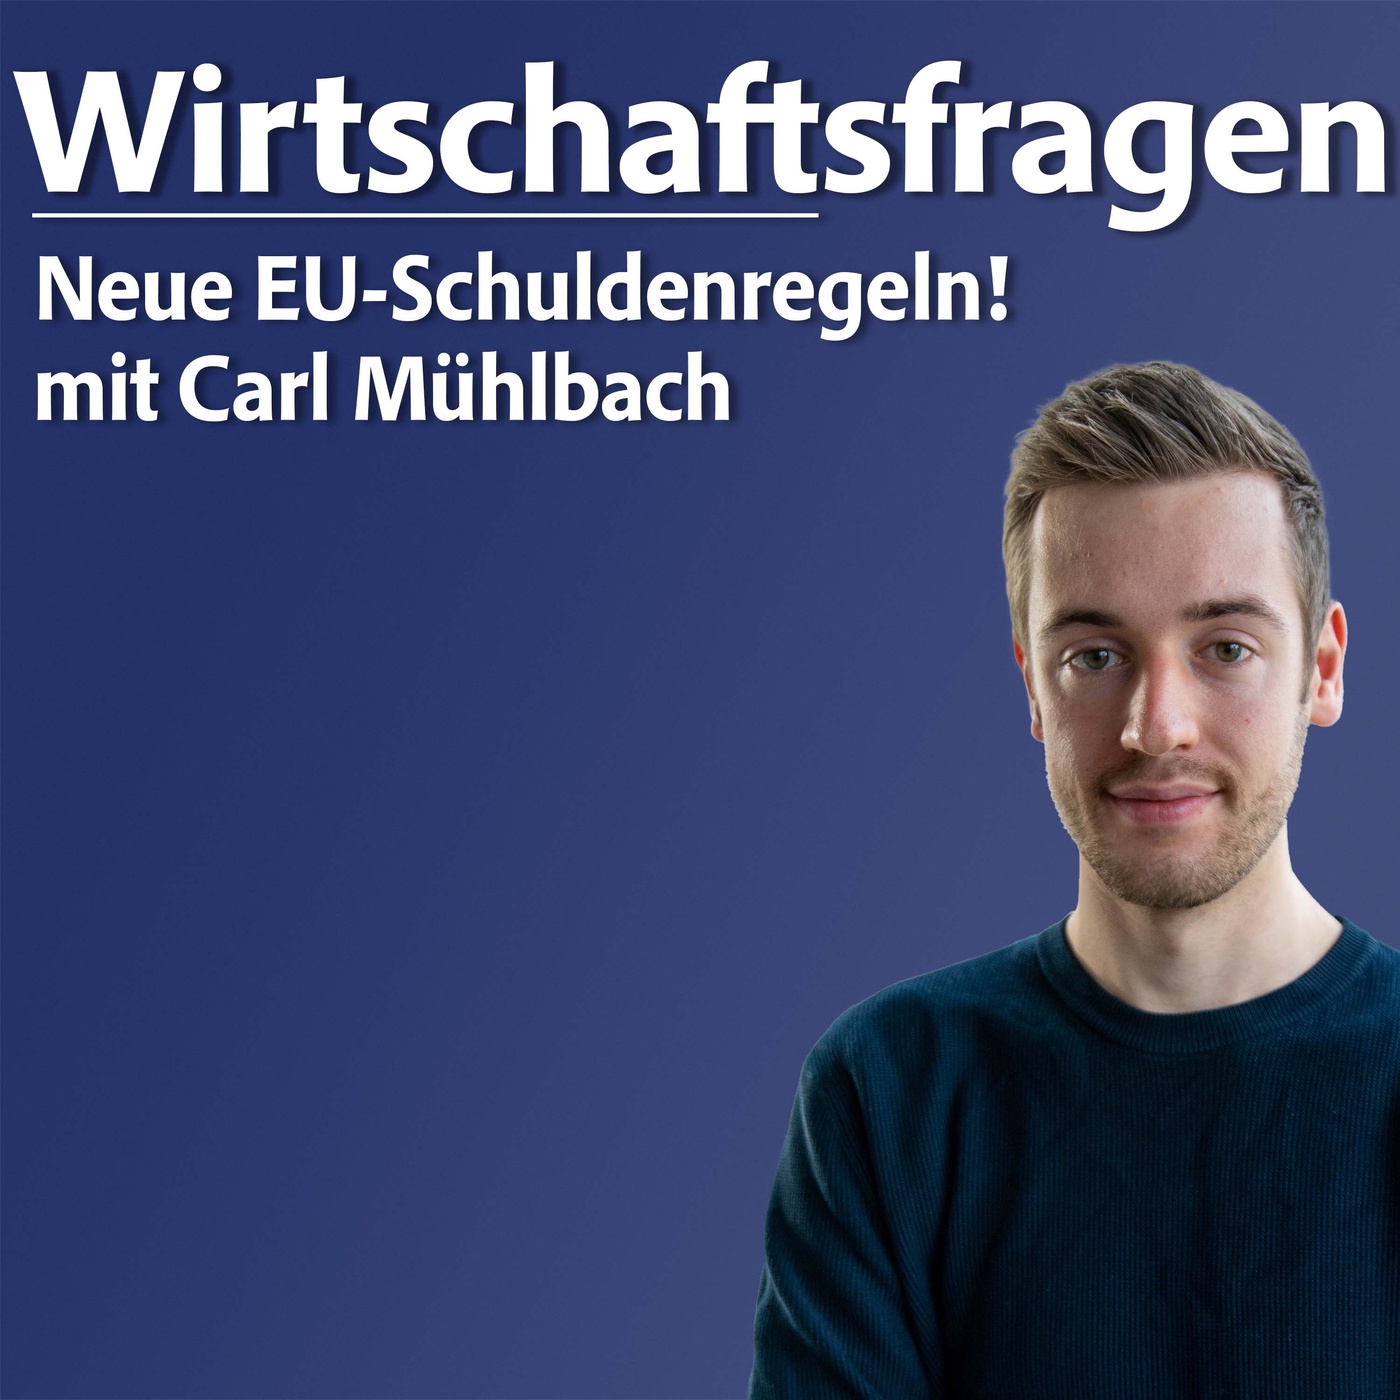 Neue EU-Schuldenregeln! - mit Carl Mühlbach